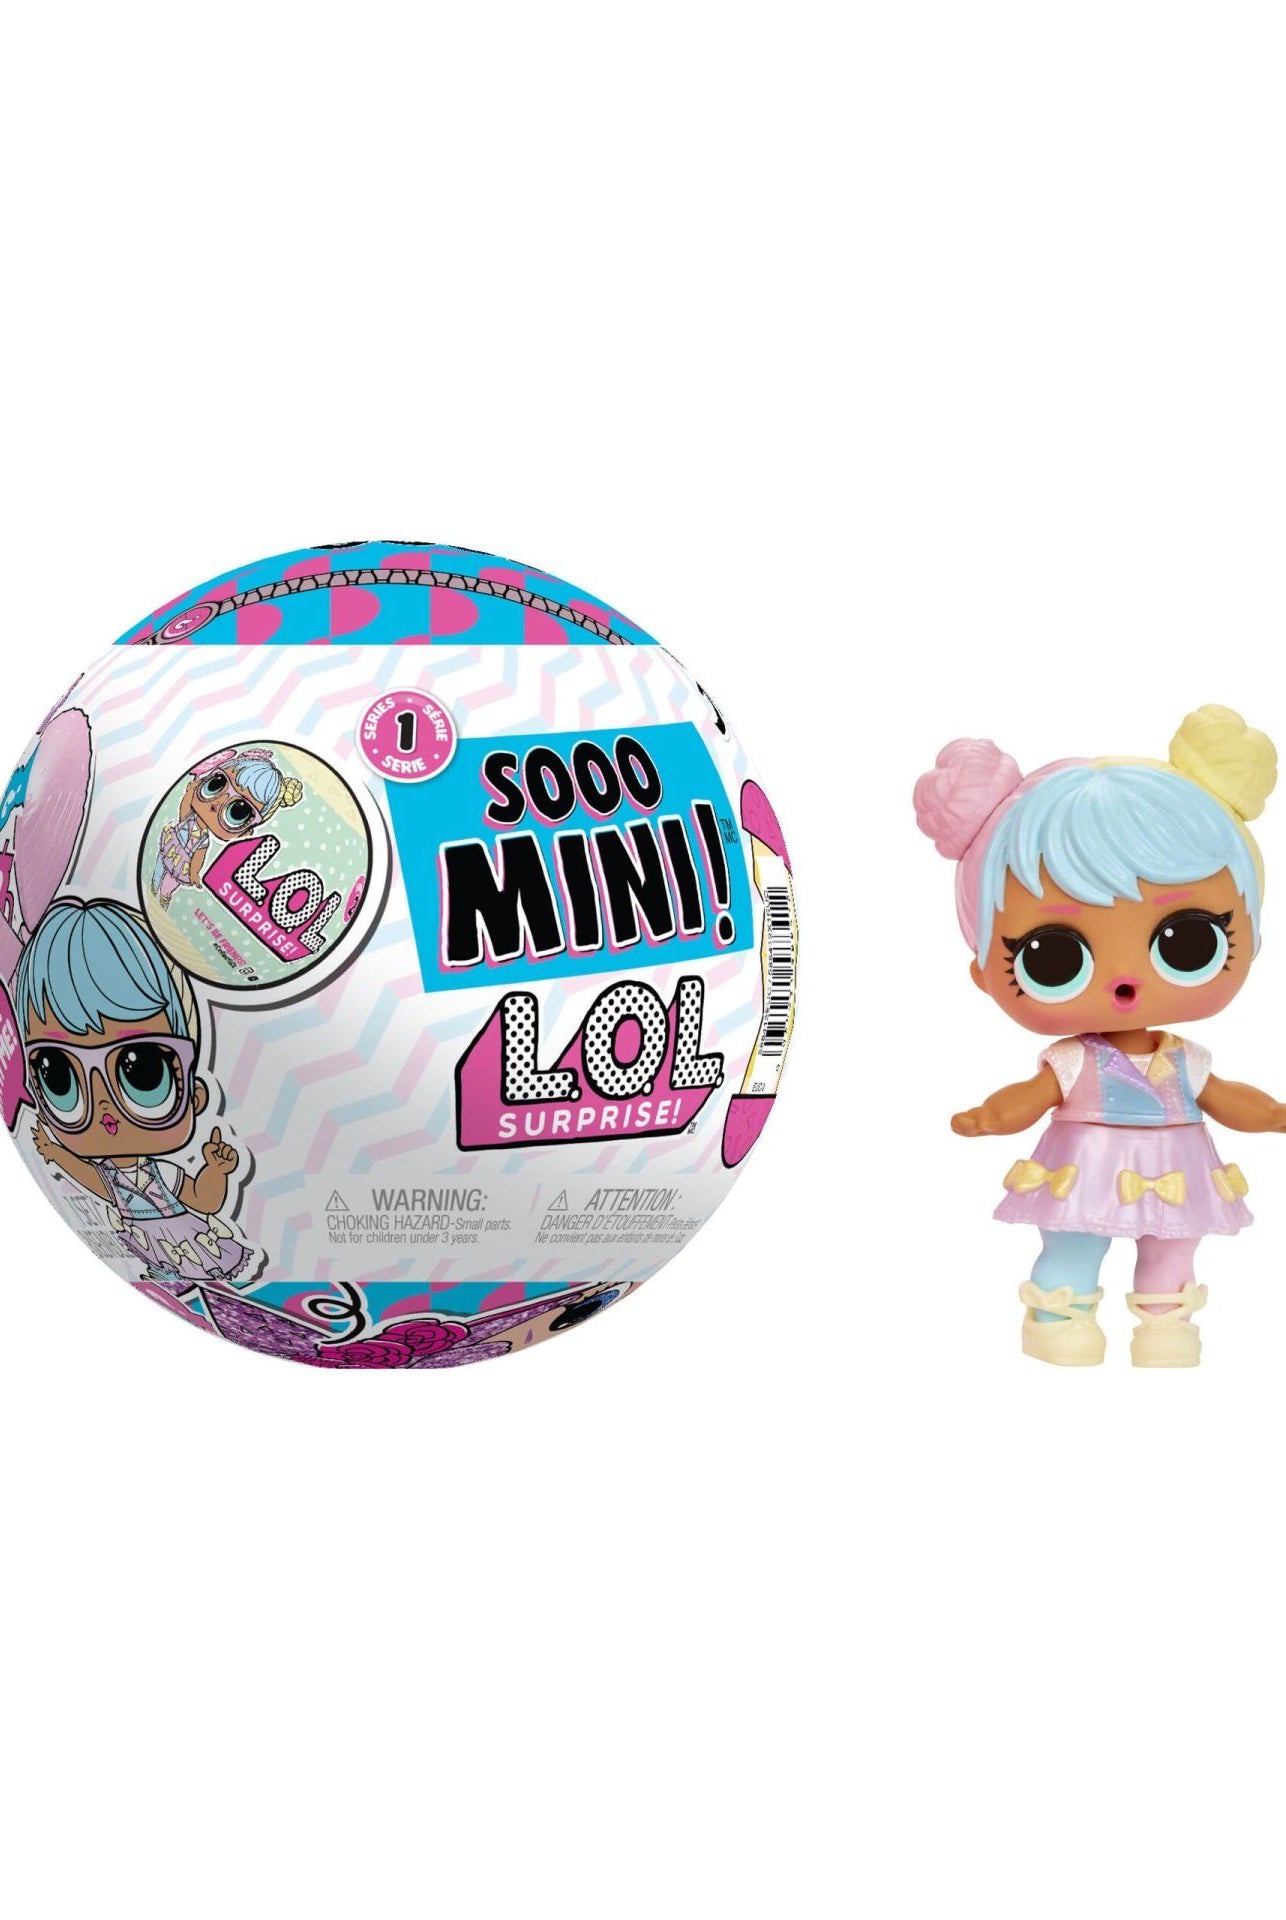 L.O.L Surprise Sooo Mini Sürpriz Ids590187 Biriktirilebilir Oyuncaklar ve Setleri | Milagron 